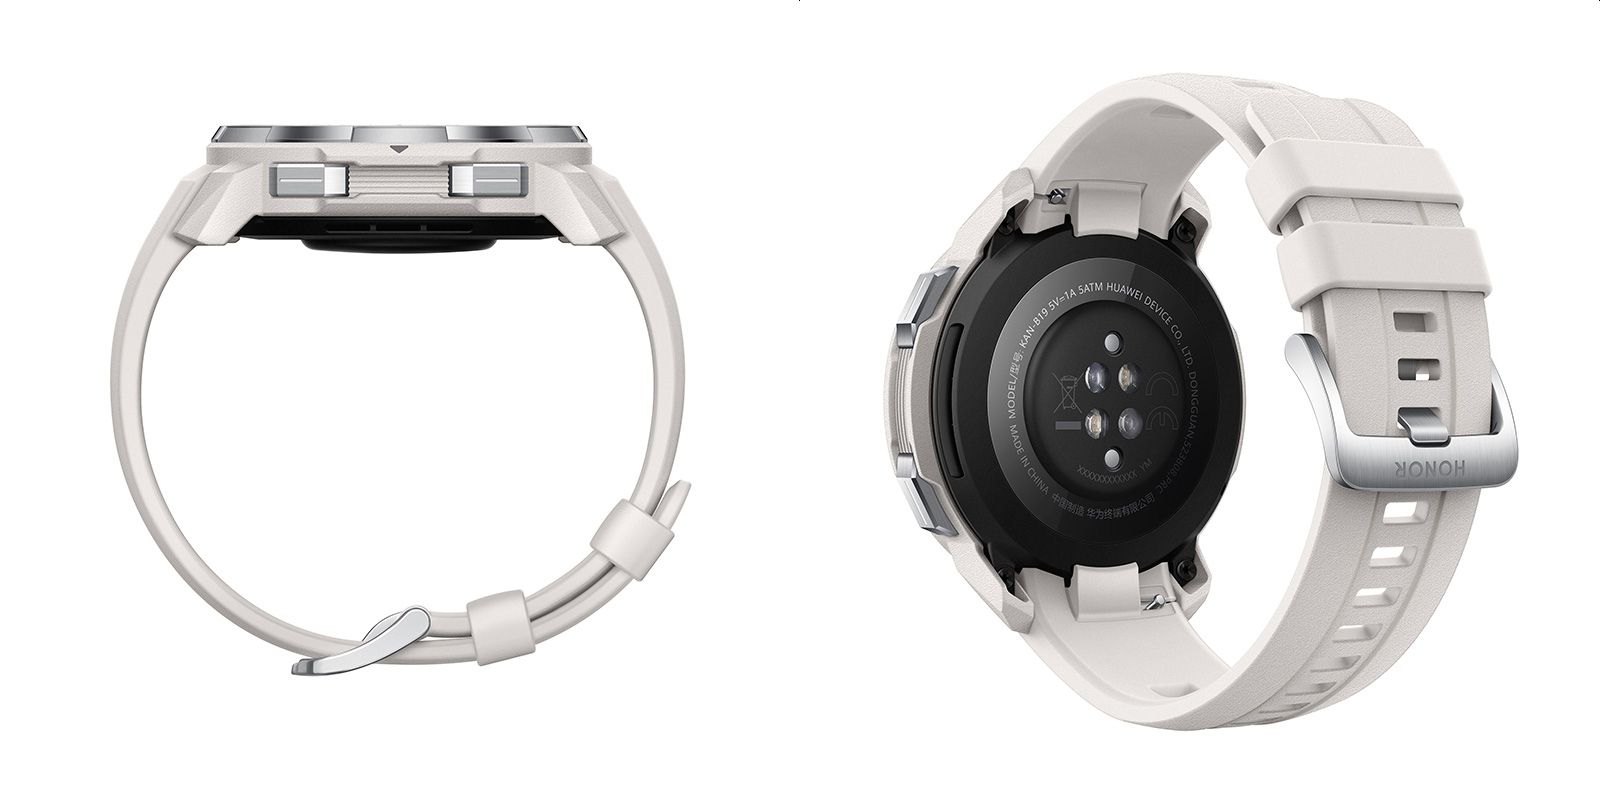 Хонор gs pro купить. Смарт-часы Huawei Honor watch GS Pro. Honor watch GS Pro kan-b19. Смарт-часы Honor watch GS Pro White (kan-b19). Honor watch GS Pro White /kan-b19/.